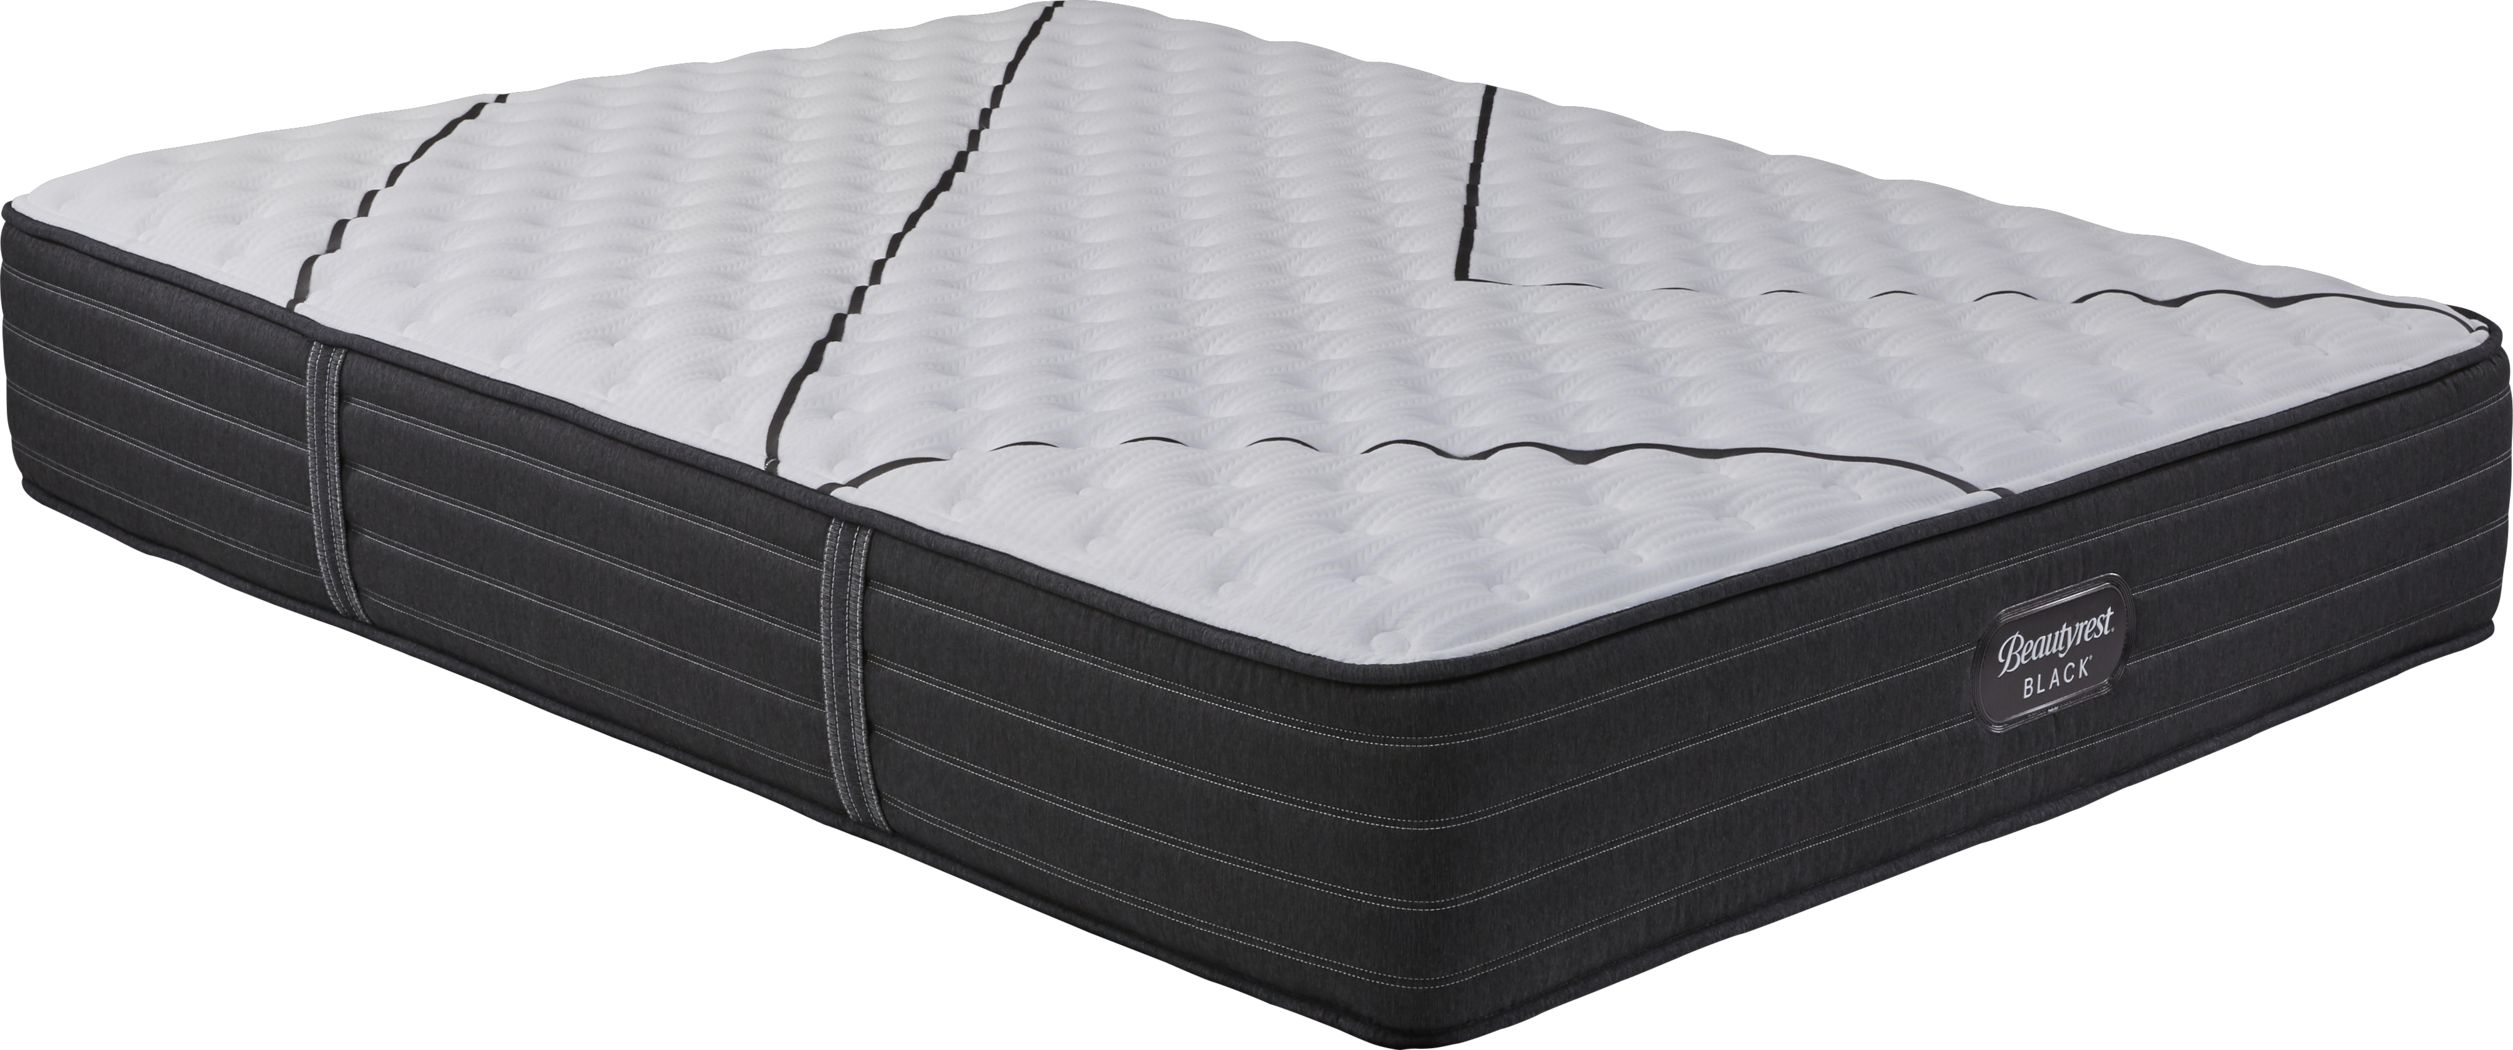 extra firm queen mattress on sale